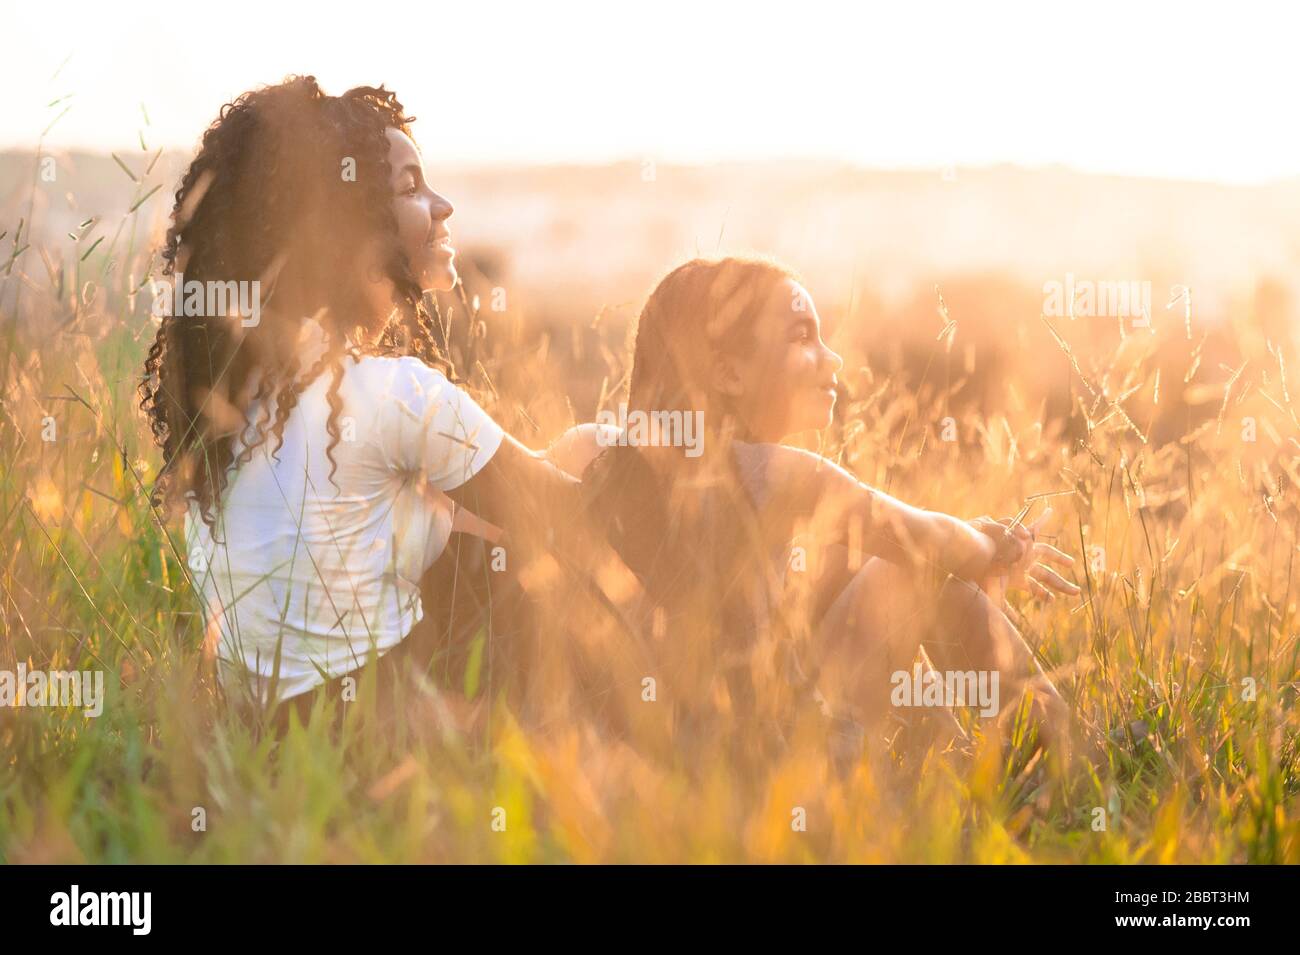 Zwei afro-amerikanische Mädchen sitzen auf dem Feld und blicken auf den Sonnenuntergang mit goldenem Sonnenlicht, das die Szene mit ihrer rechten Seite zur Kurvenscheibe iluminiert Stockfoto